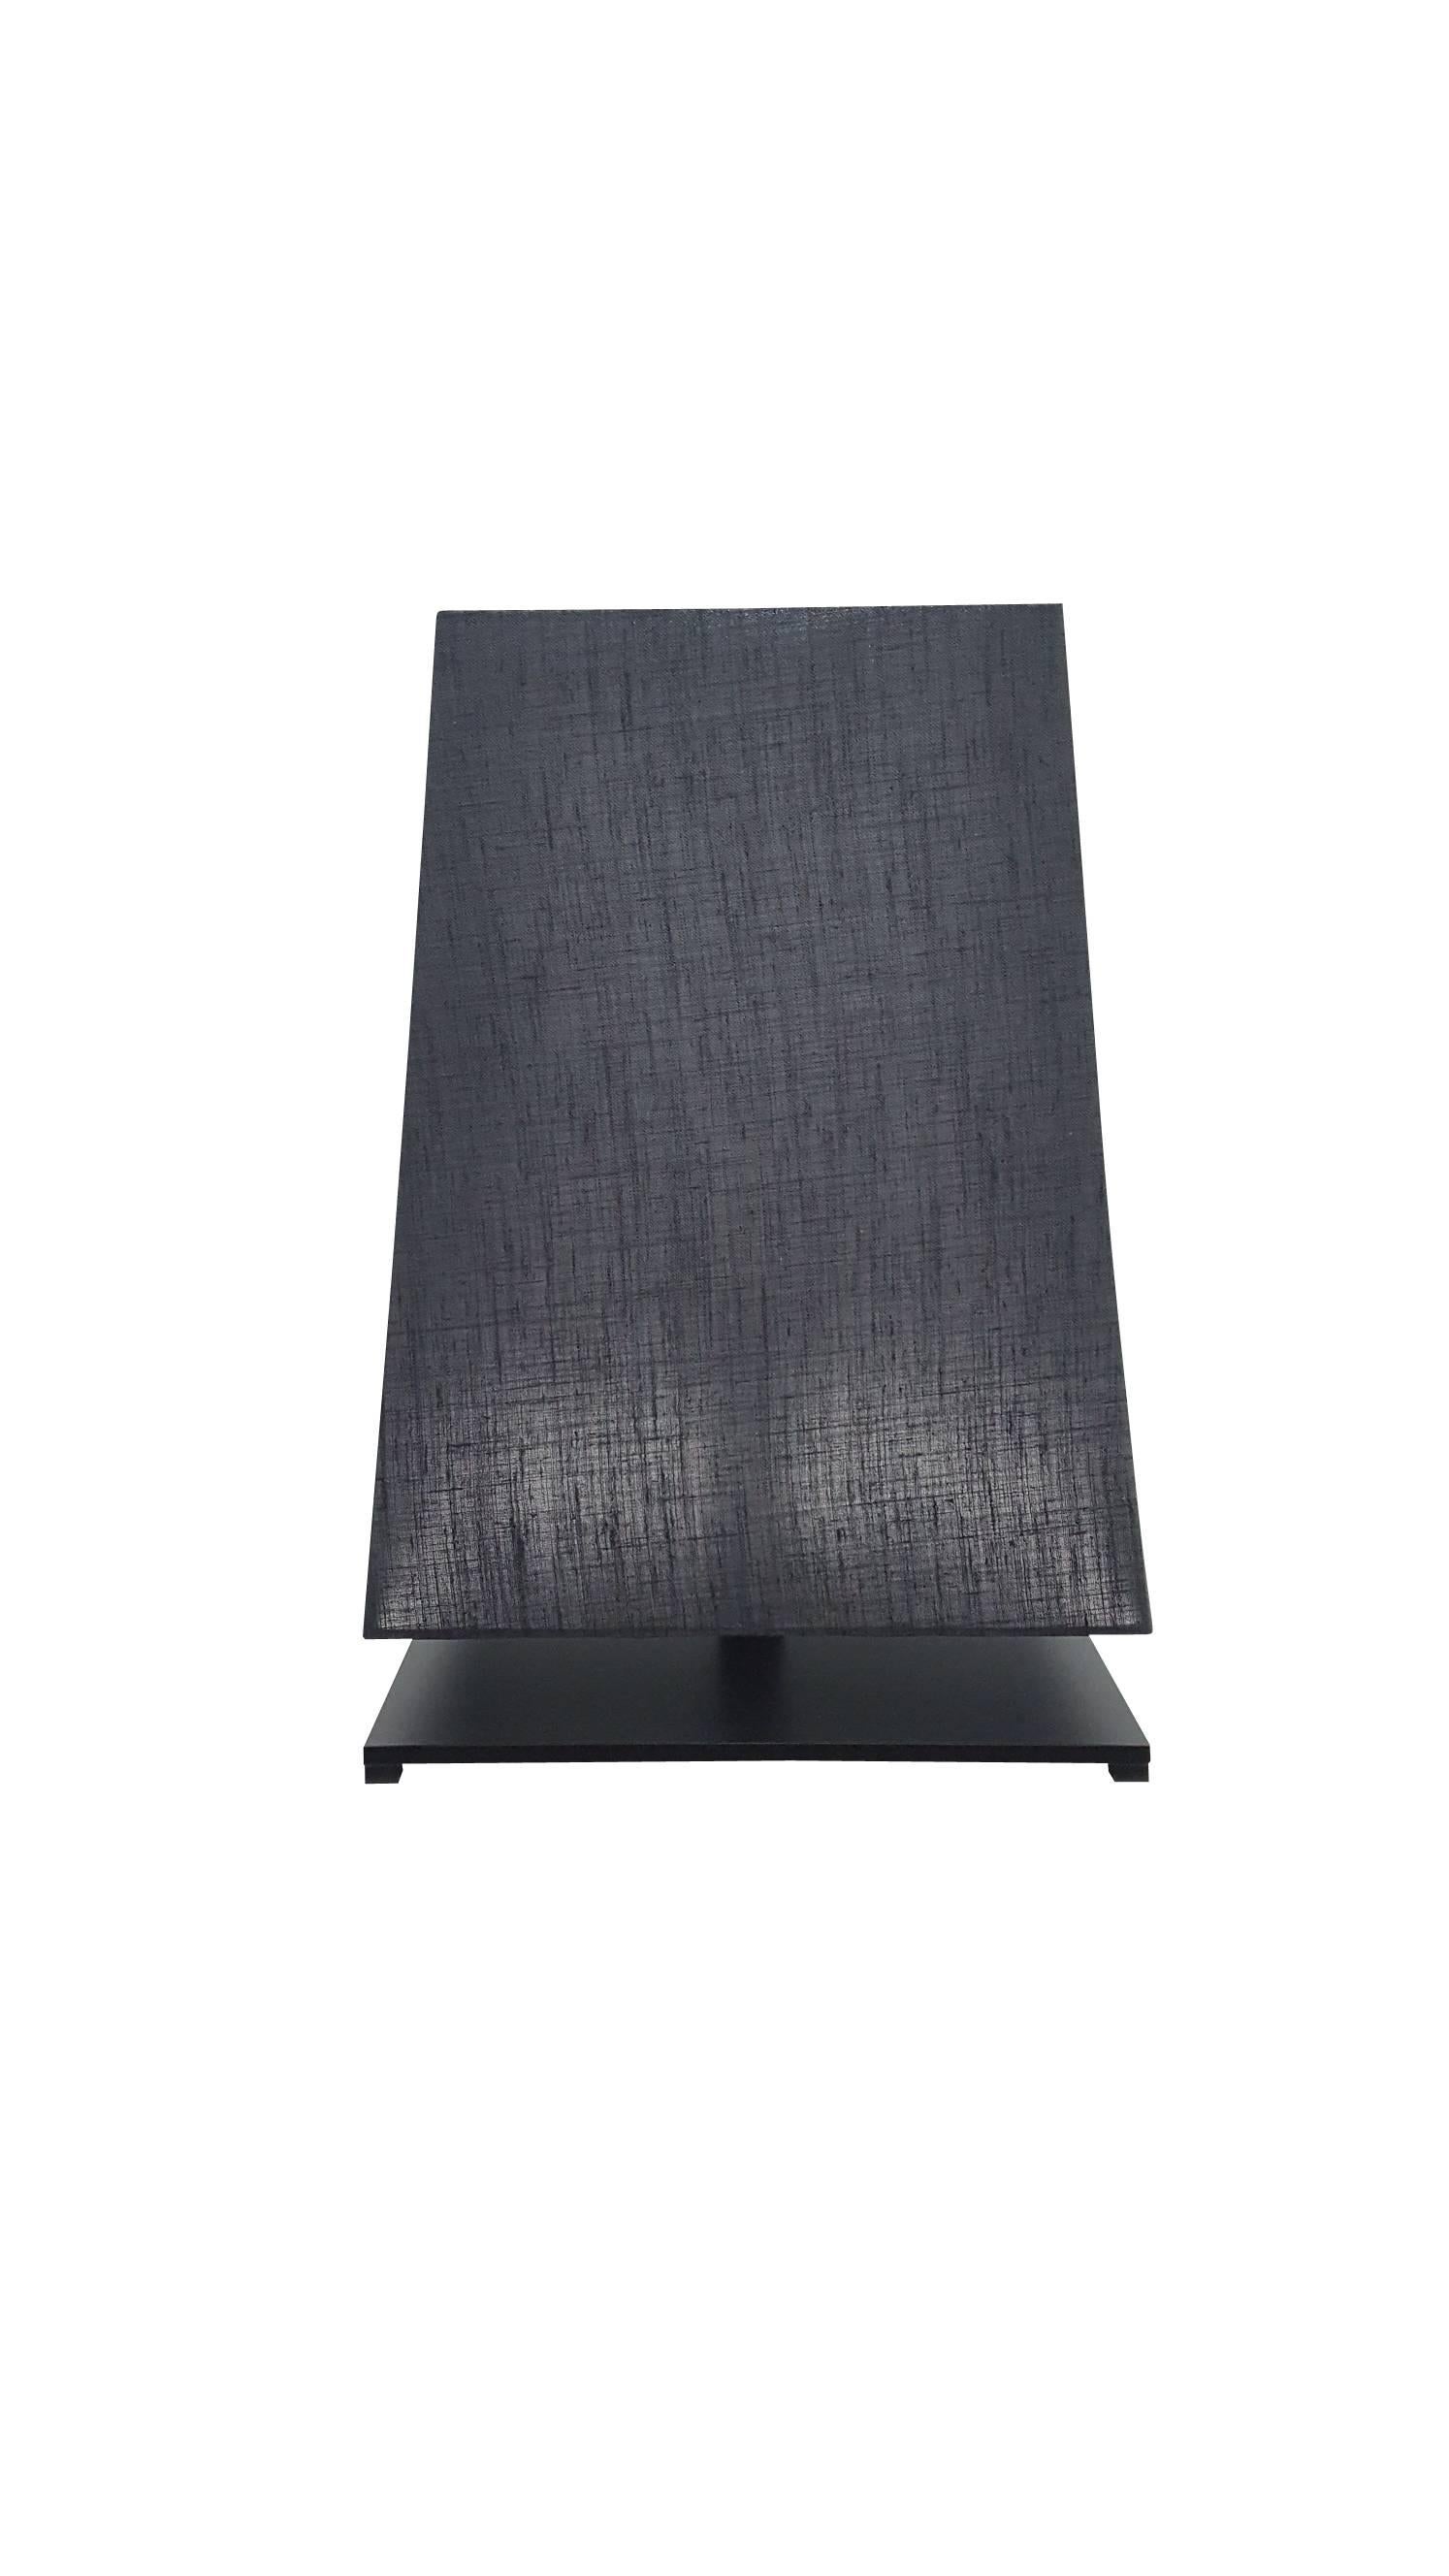 Beautiful Jackie table lamp-black black linen shade bulb E27 52 watt.